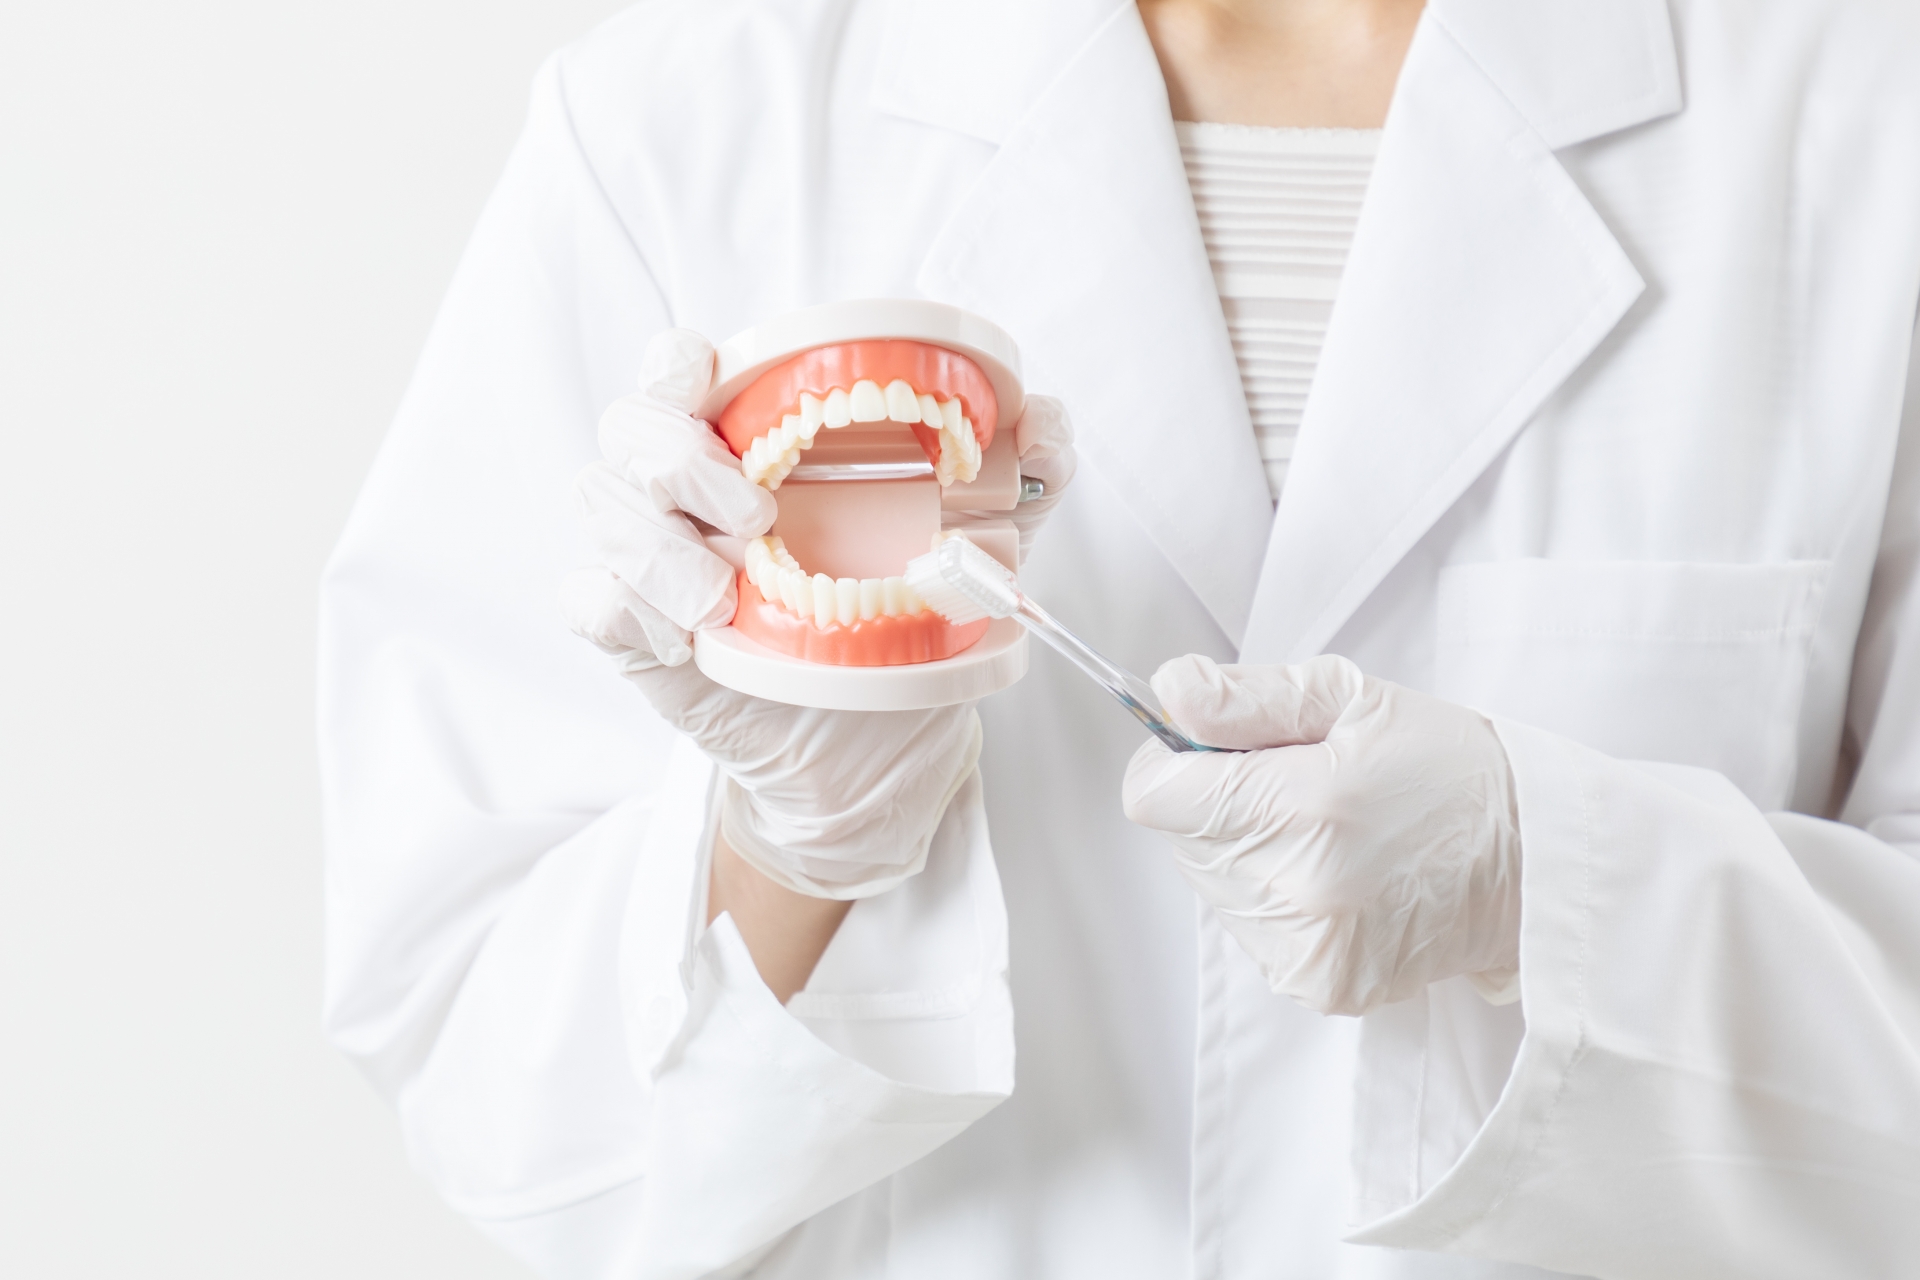 インプラントを前歯に入れる以外の治療法